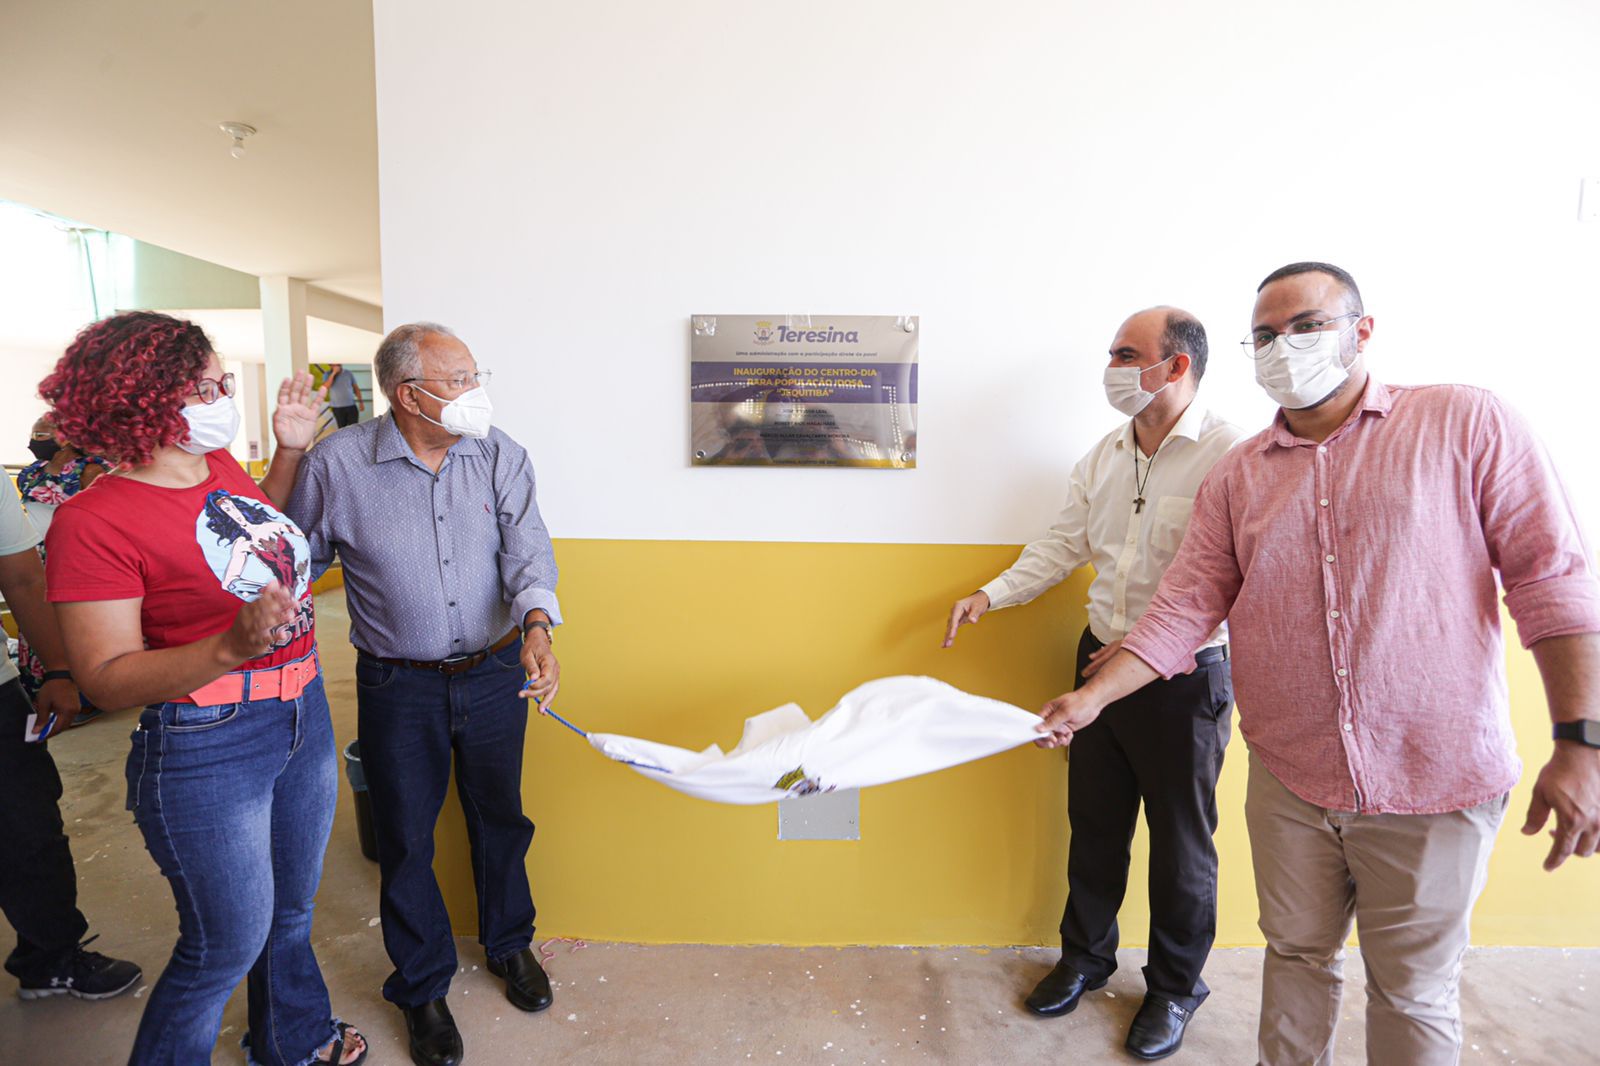 Centro de Valorização da Pessoa Idosa é inaugurado com capacidade para atender mais de 200 idosos